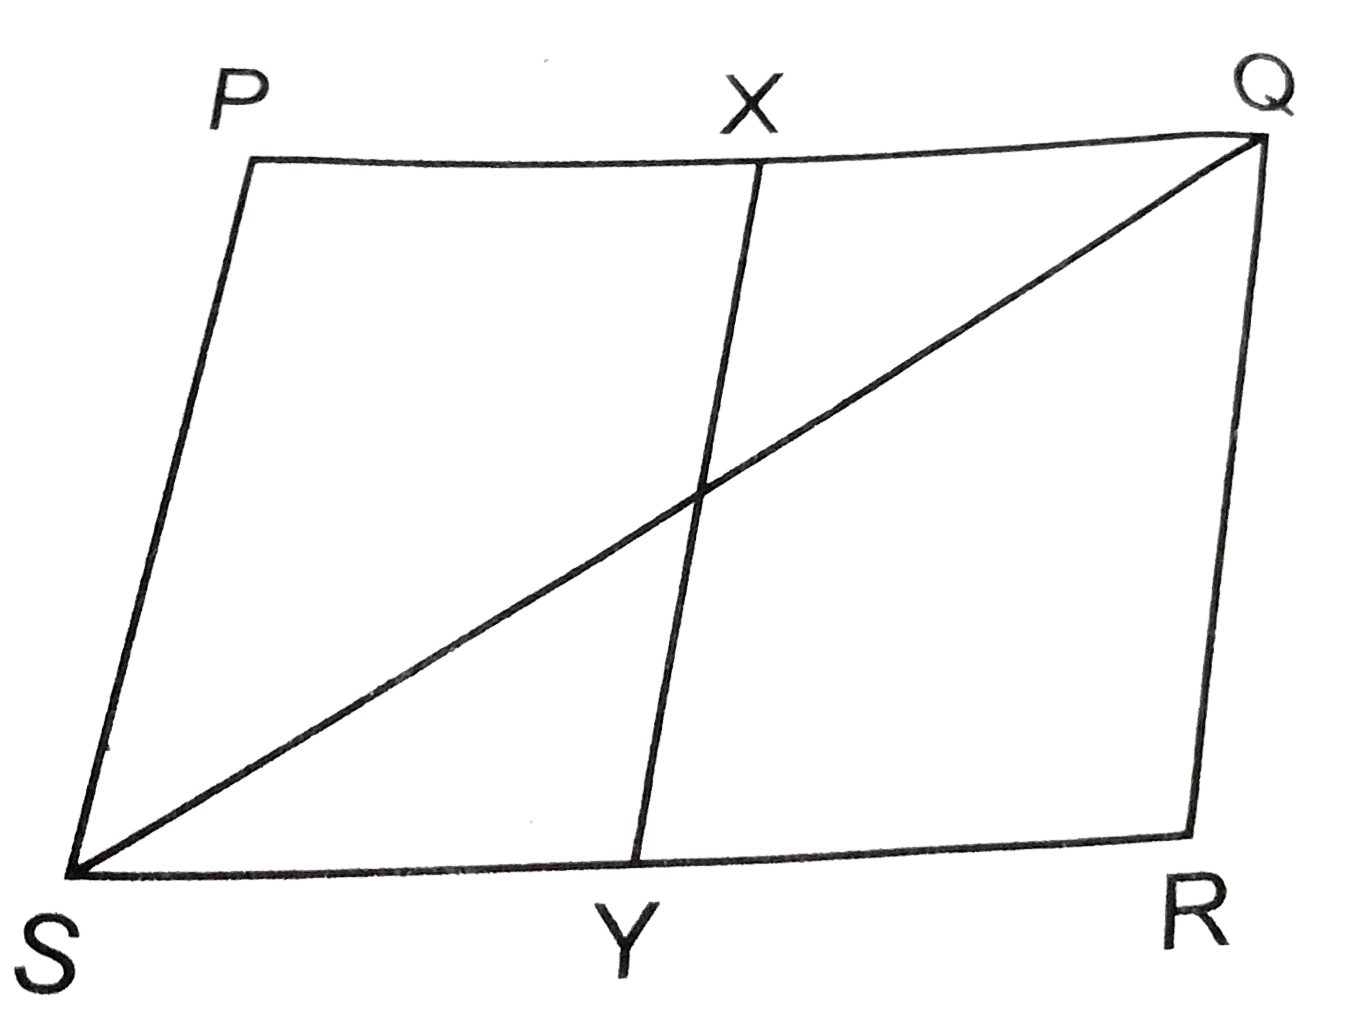 दी आकृति में, PQRS एक समान्तर चतुर्भुज है यदि X और Y क्रमशः PQ और SR के मध्य-बिन्दु है तथा विकर्ण SQ मिलाया गया है, तो समान्तर चतुर्भुज (XQRY) और (DeltaQSR) के क्षेत्रफलों का अनुपात ज्ञात कीजिए।